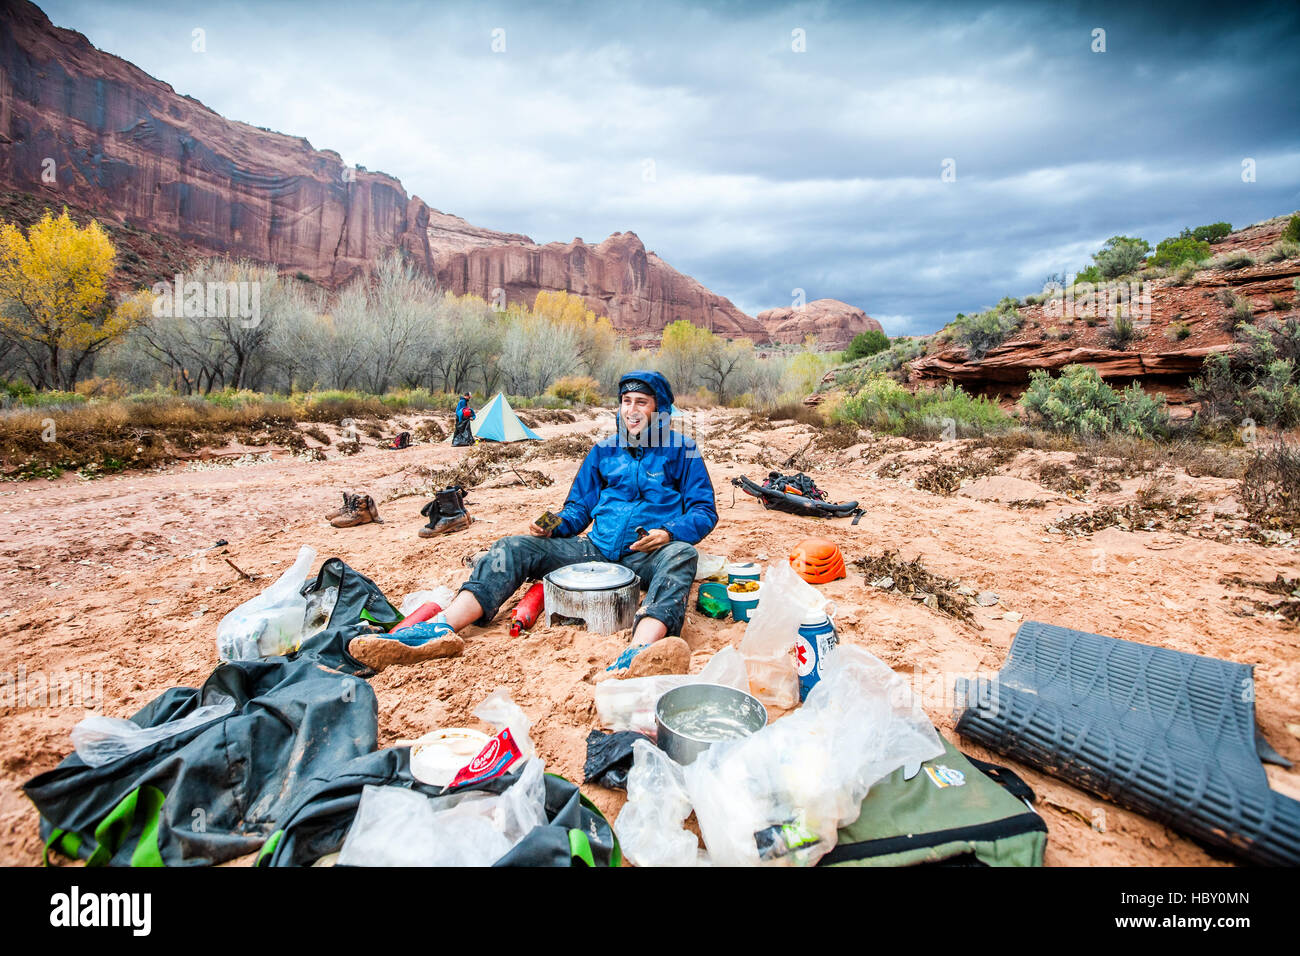 Un hombre joven en un camping de lavado en seco, cocinar la cena bajo una tormenta en los cañones de Utah Foto de stock